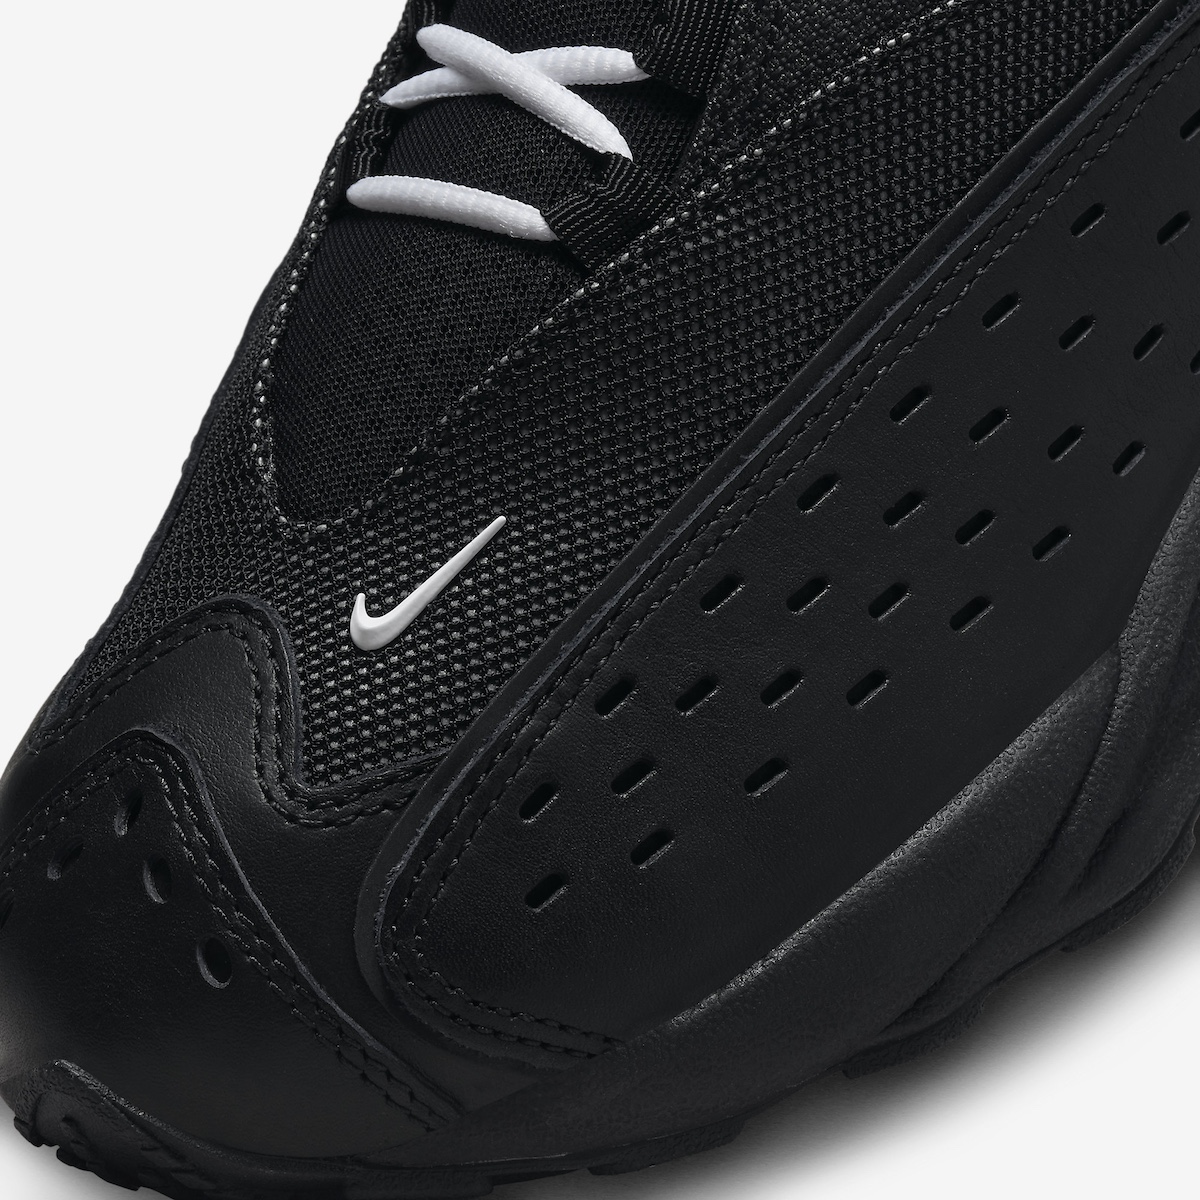 NOCTA-Nike-Air-Zoom-Drive-Black-White-6.jpeg